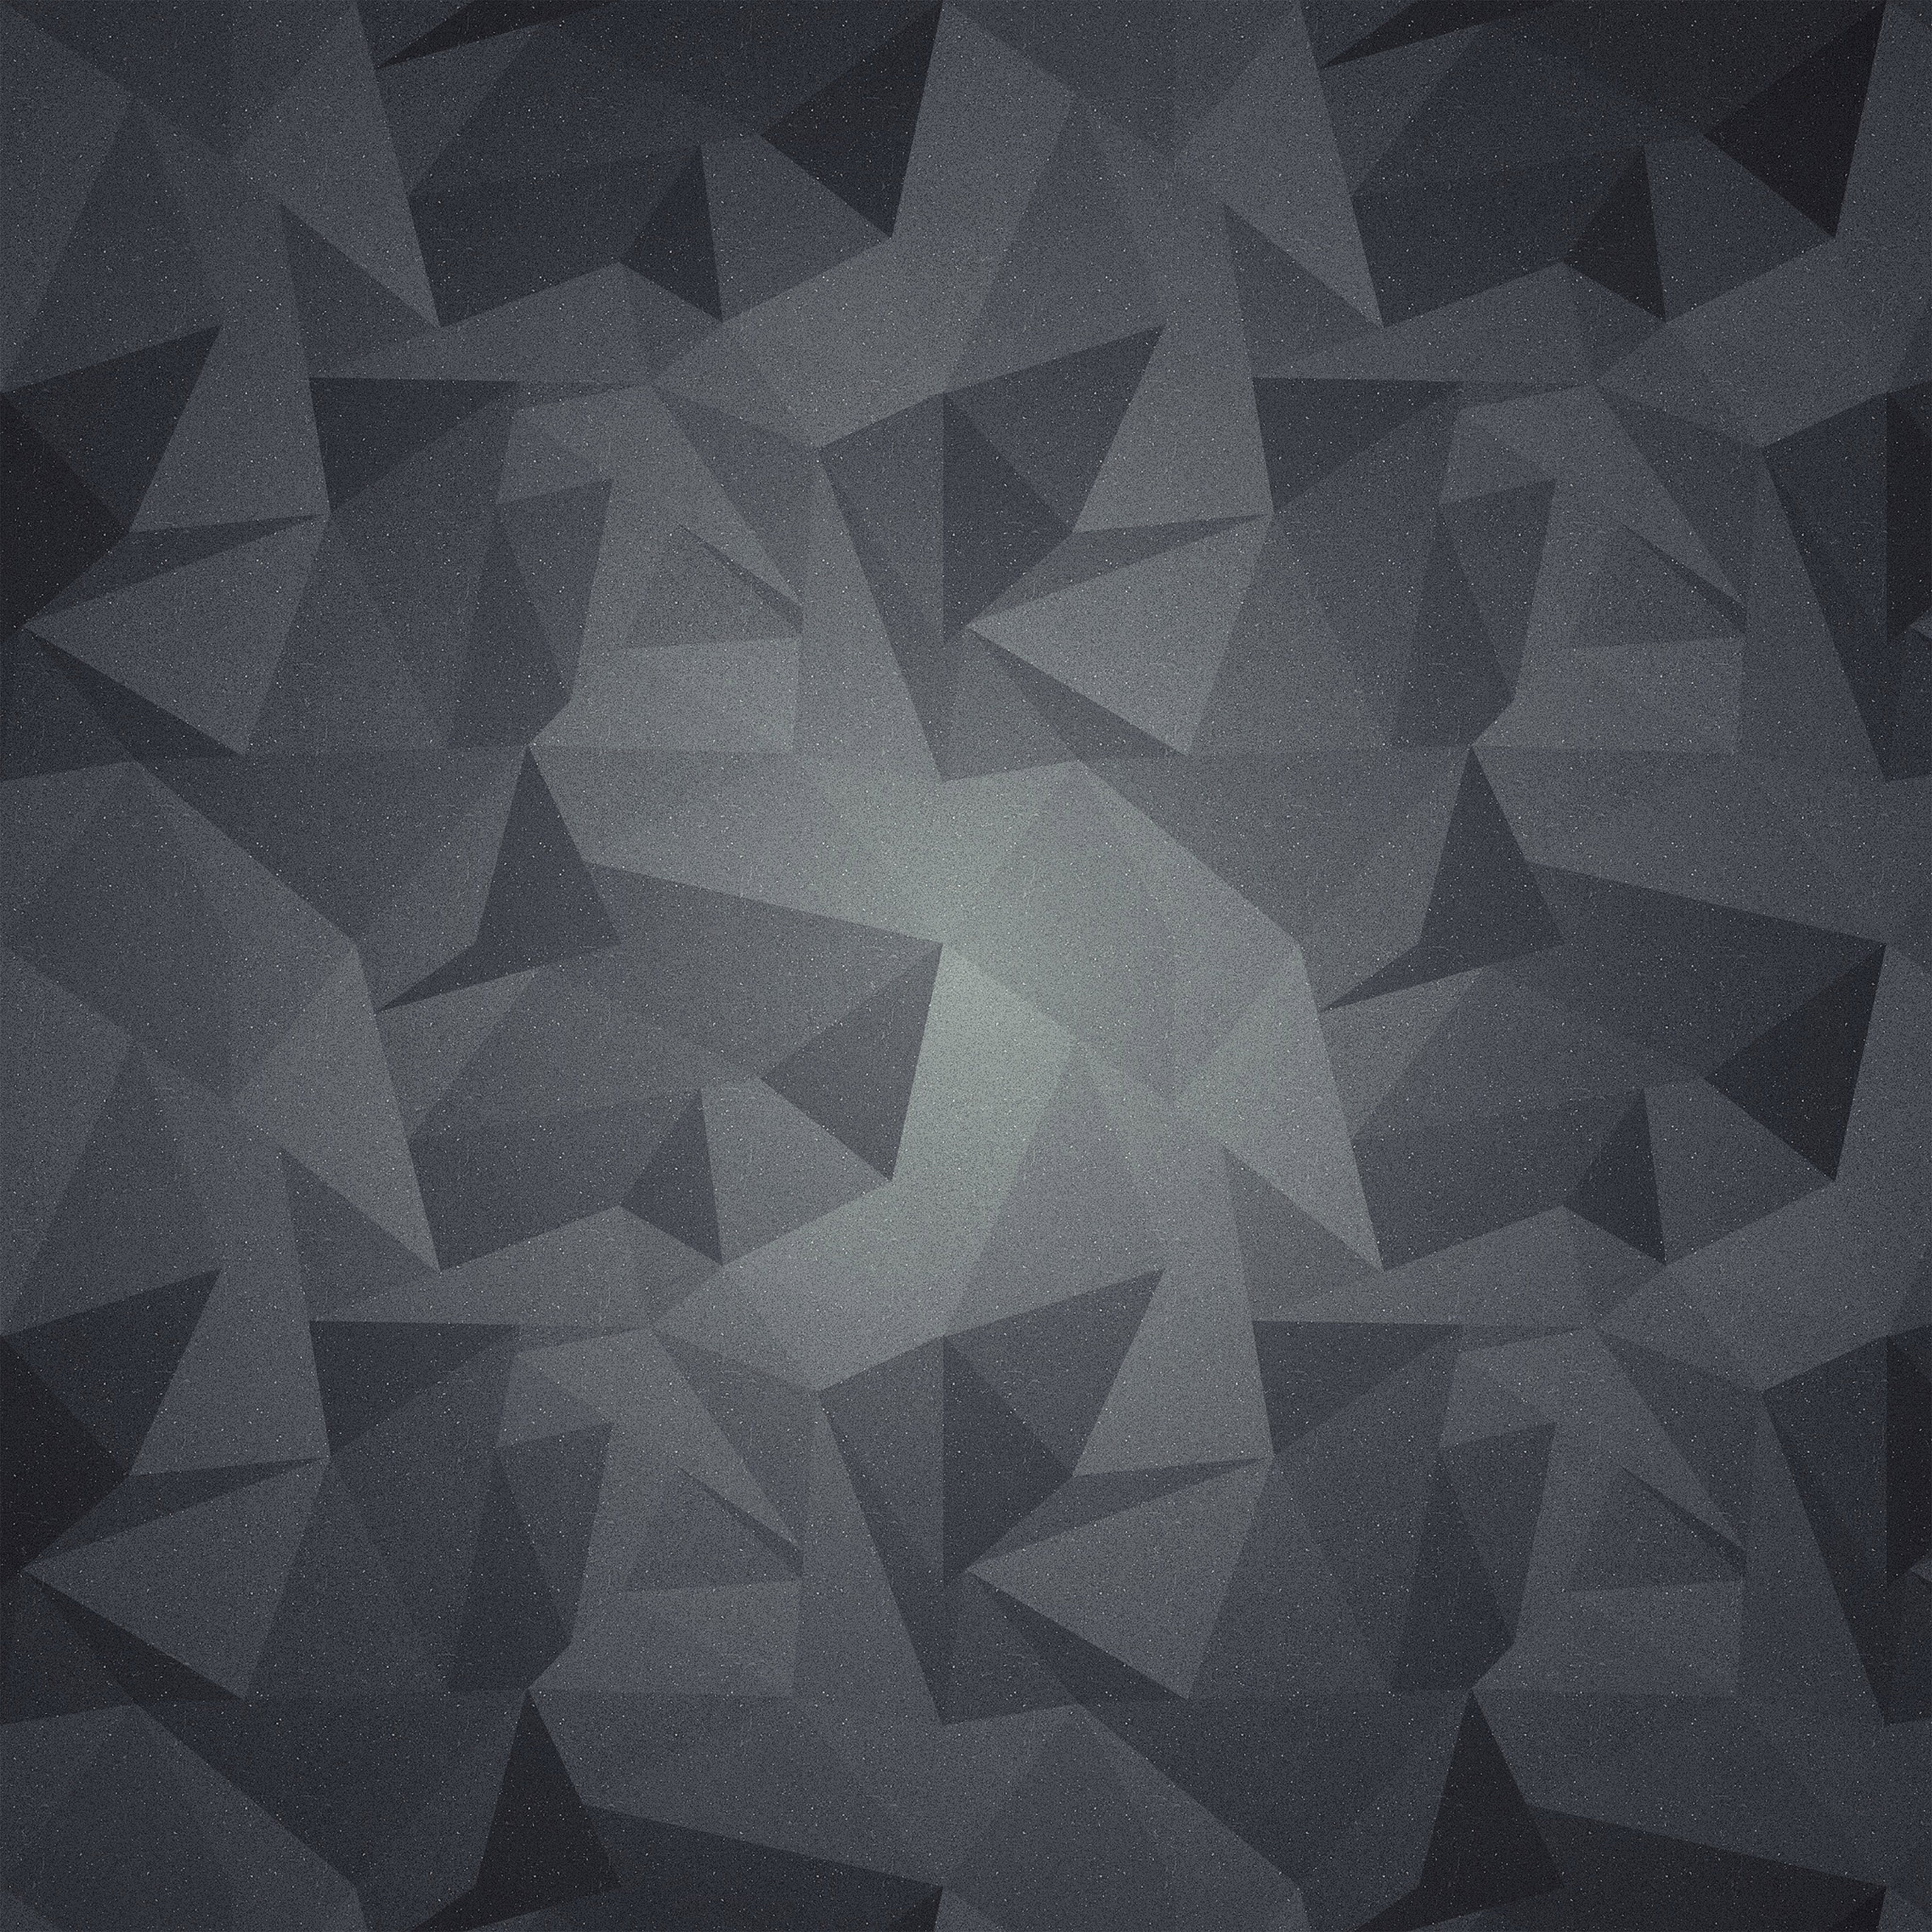 papel pintado con motivos geométricos,negro,modelo,triángulo,monocromo,en blanco y negro